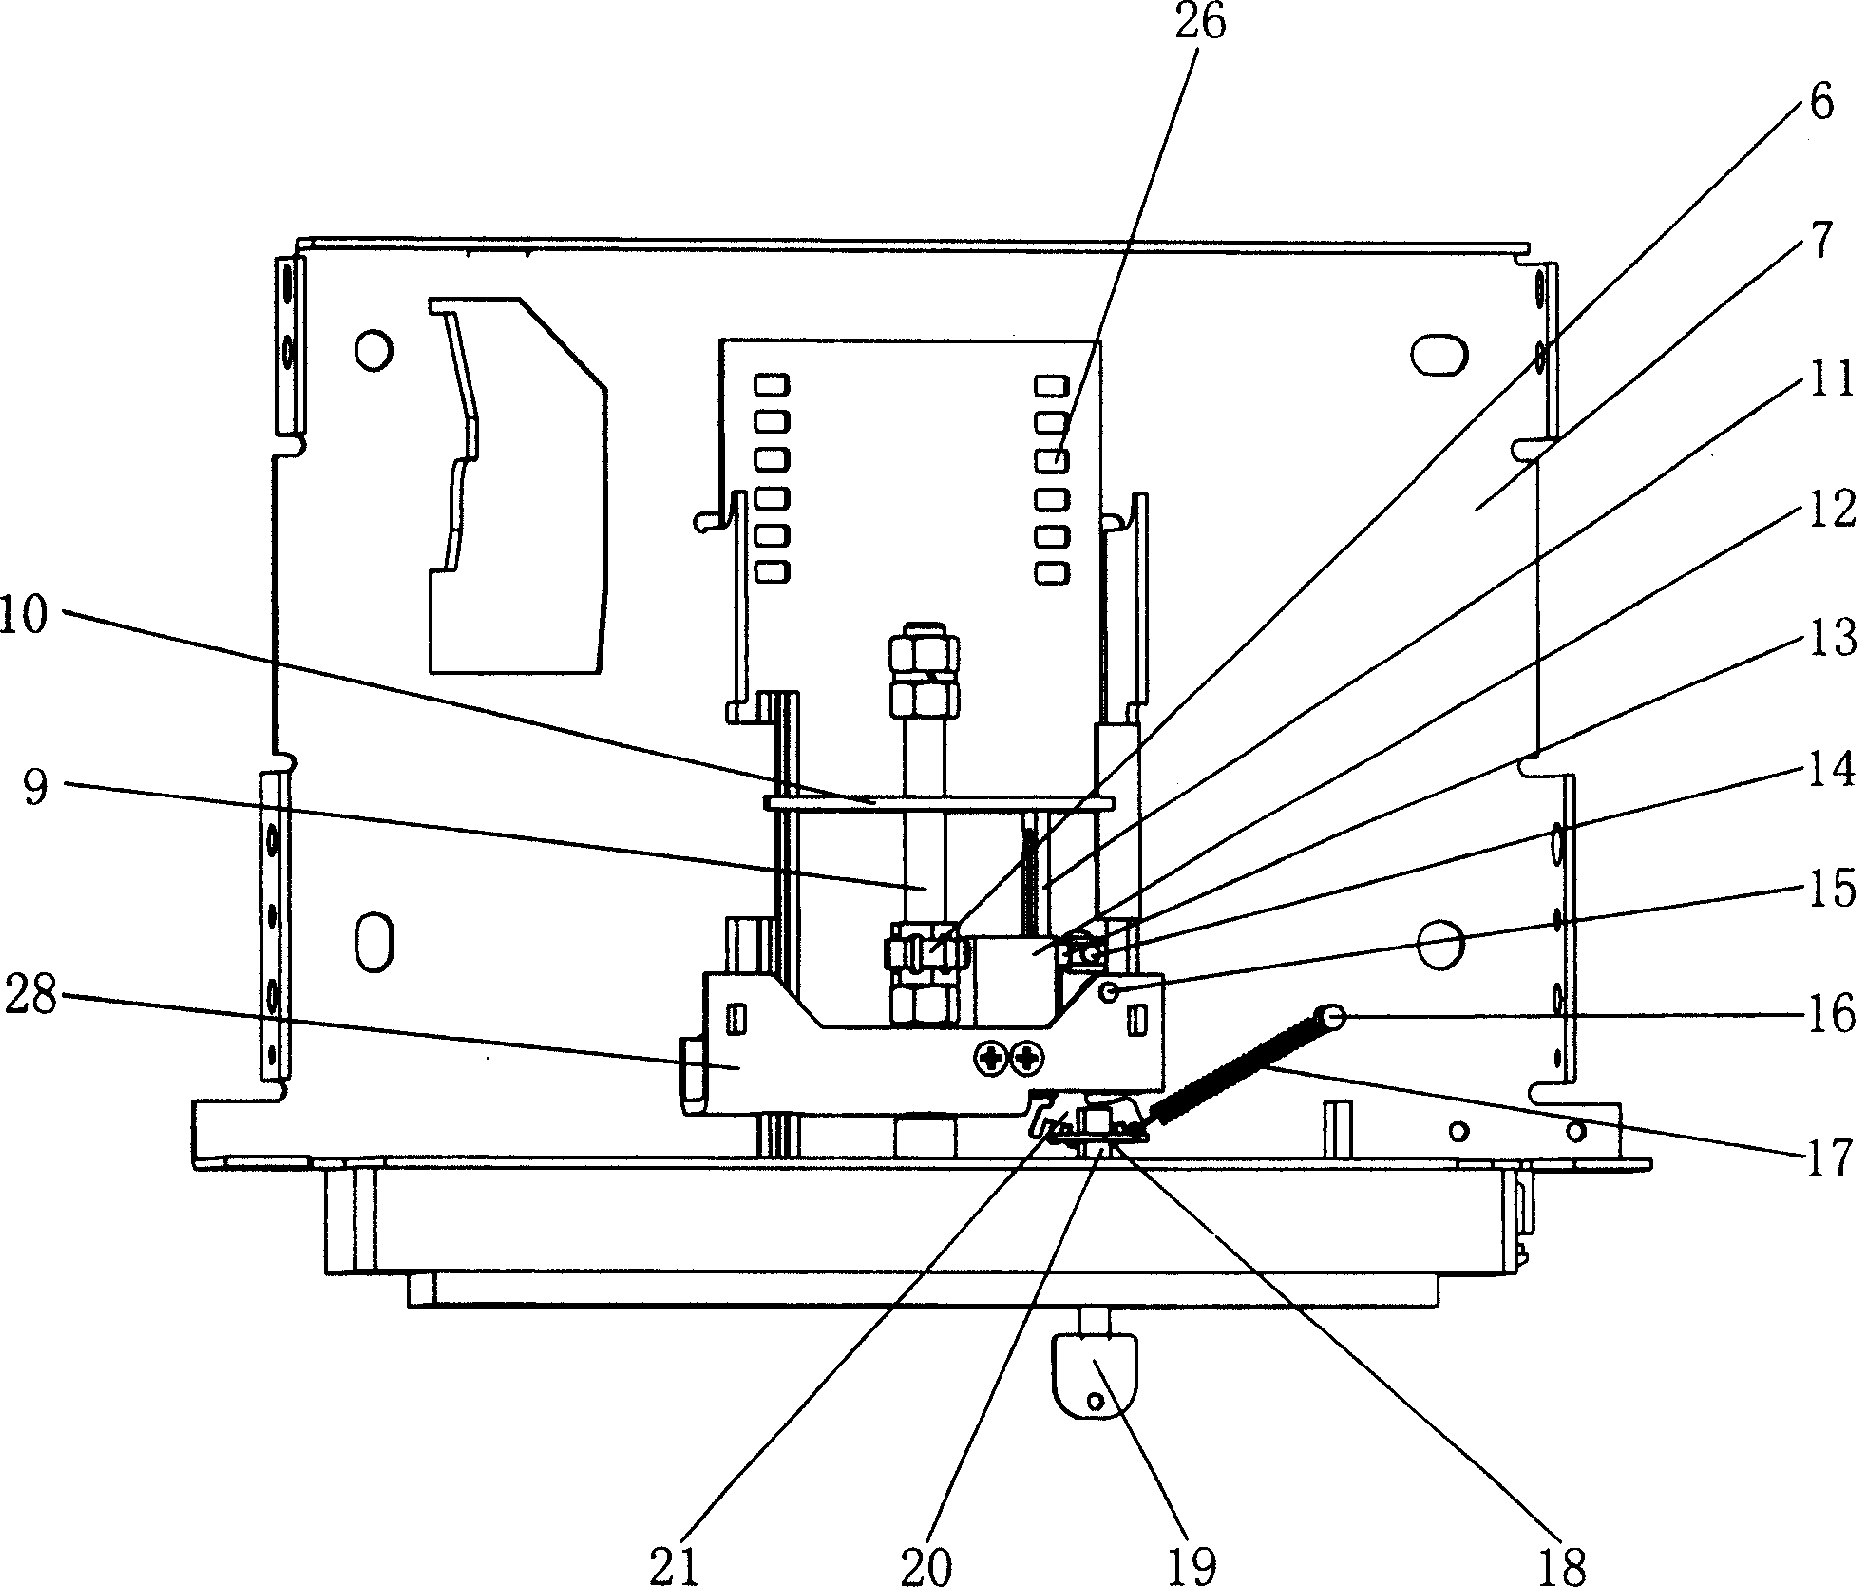 Circuit breaker drawer base with self-locking function